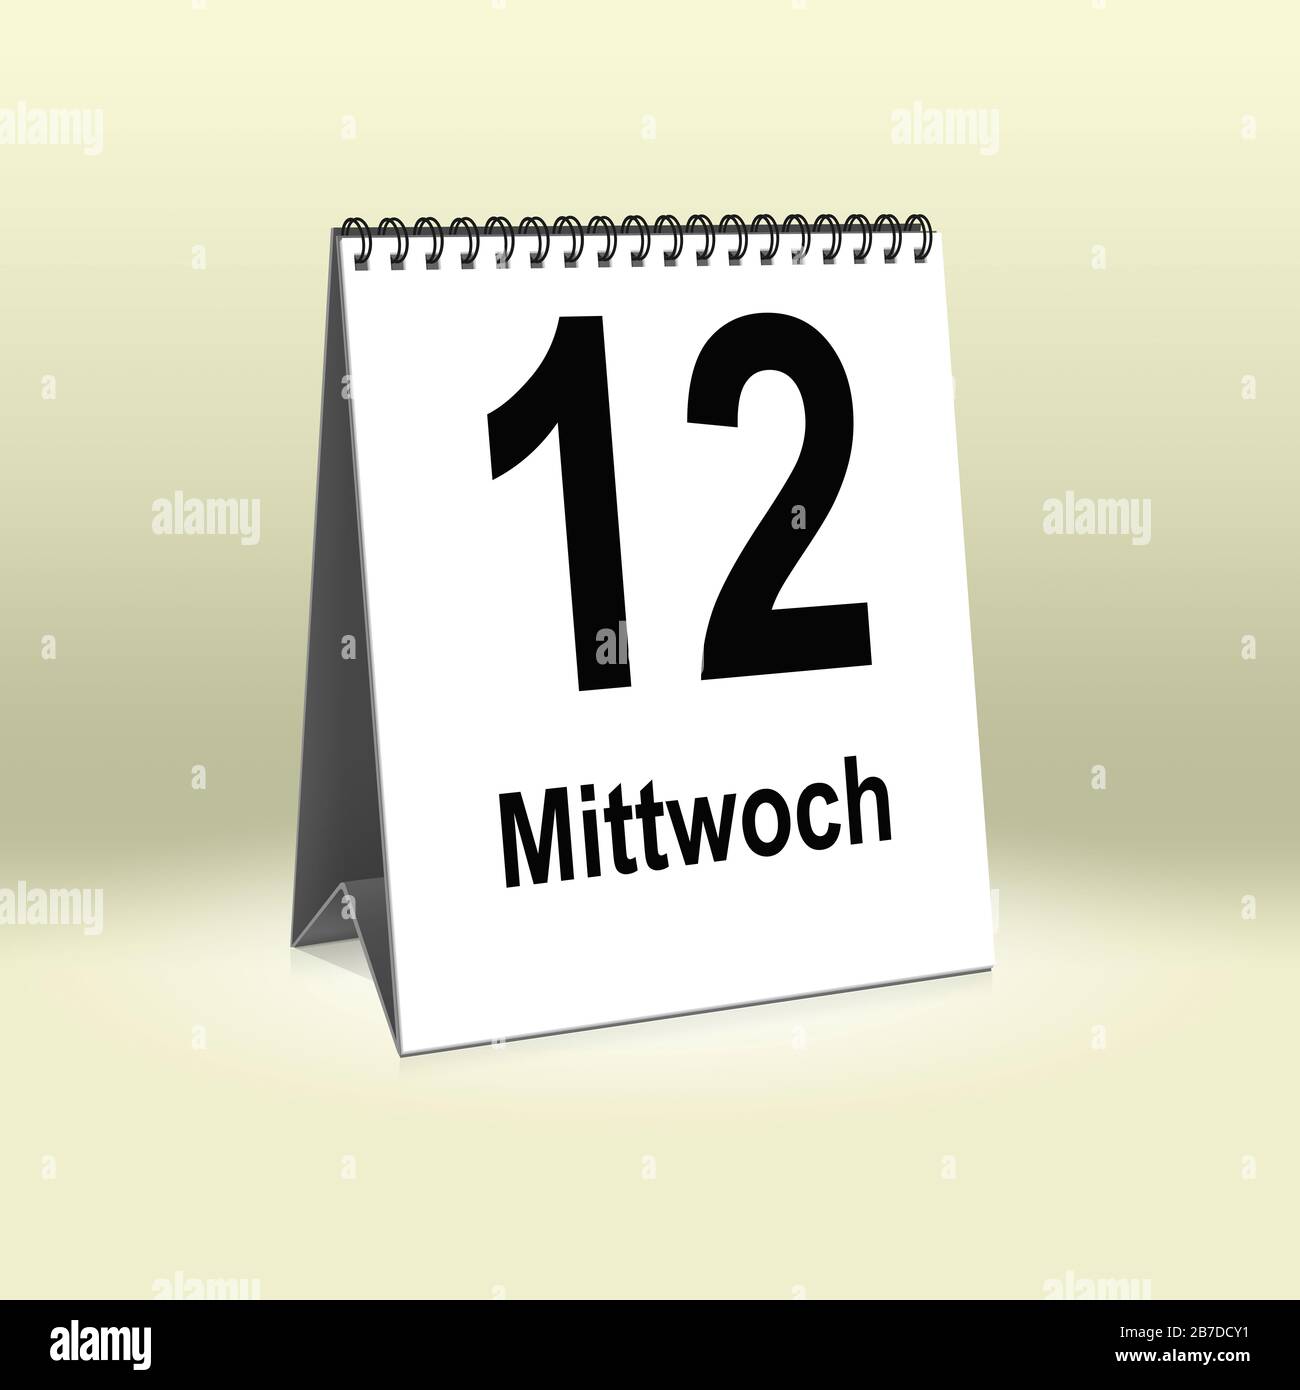 A calendar in German language shows Wednesday 12th | Ein Kalender für den Schreibtisch zeigt Mittwoch 12. Stock Photo